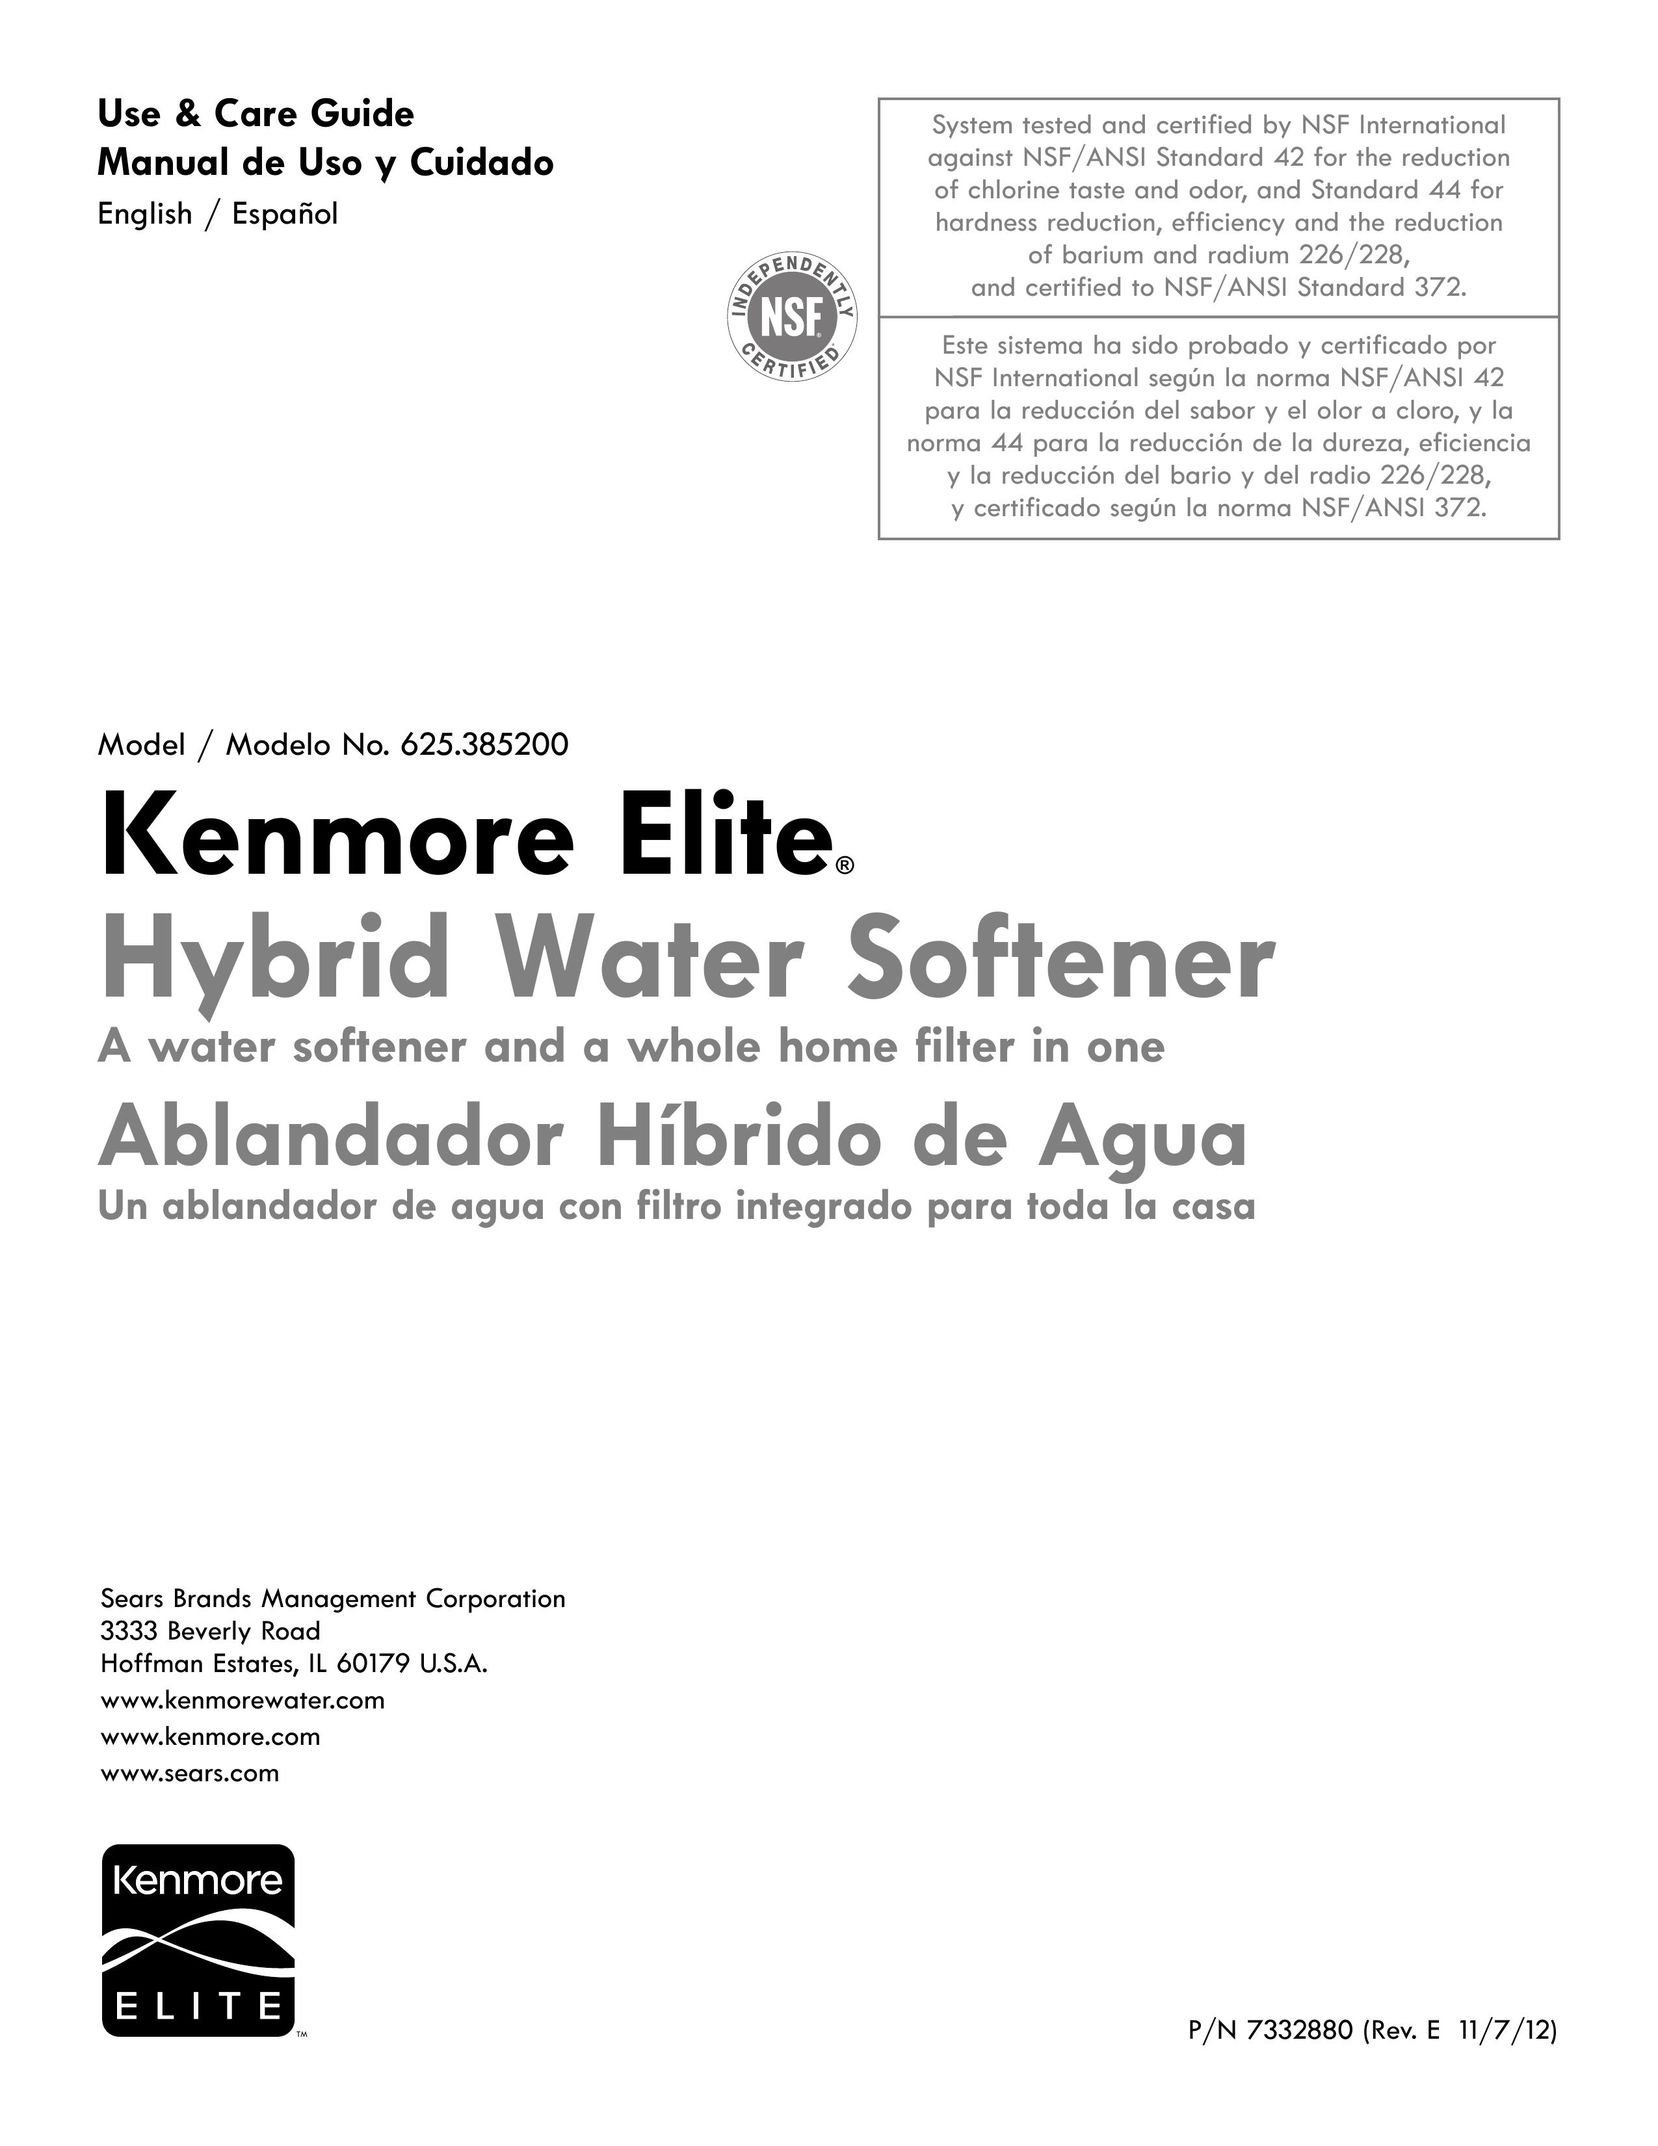 Kenmore 625.385200 Water System User Manual